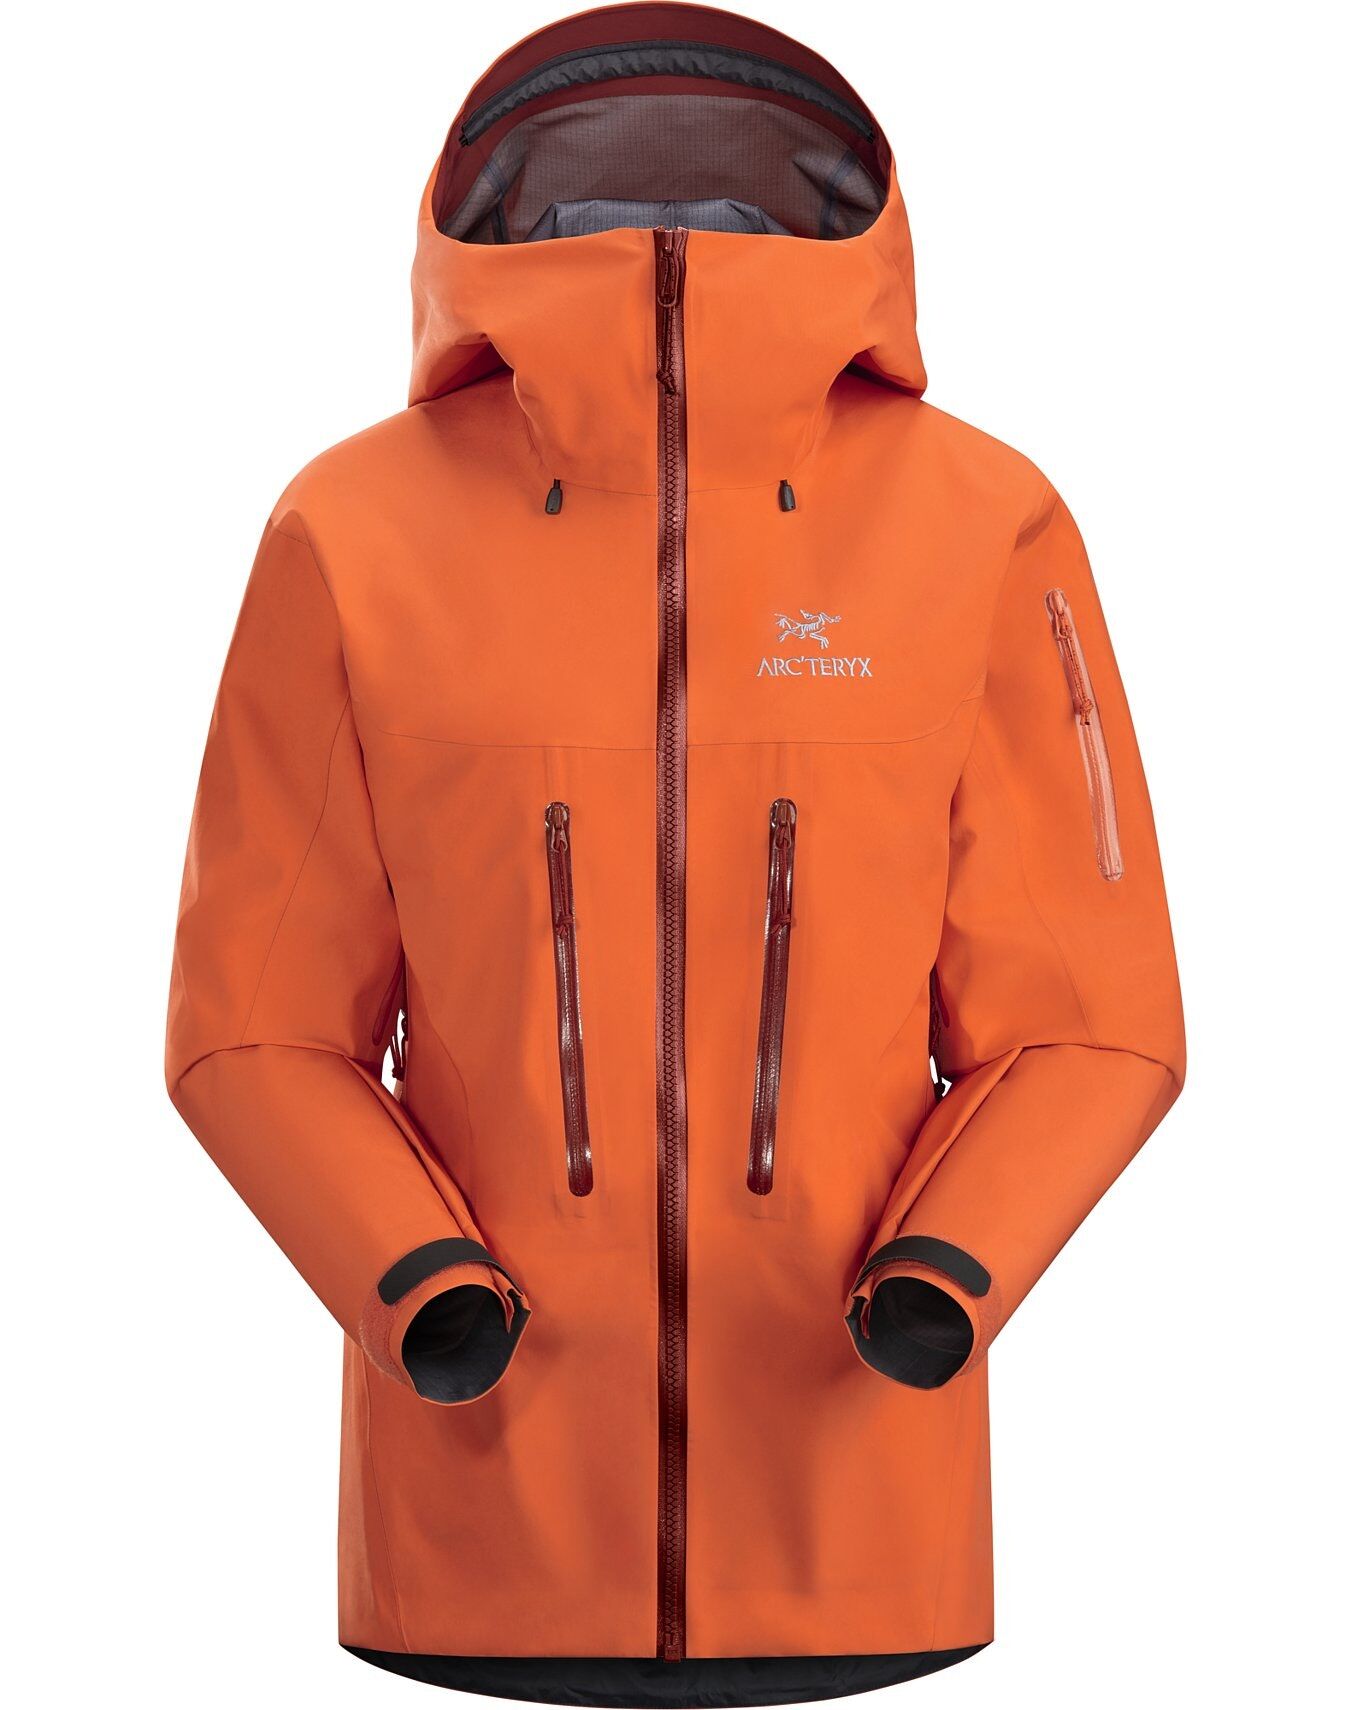 Arc'teryx Alpha SV Jacket - Hardshell jacket - Women's